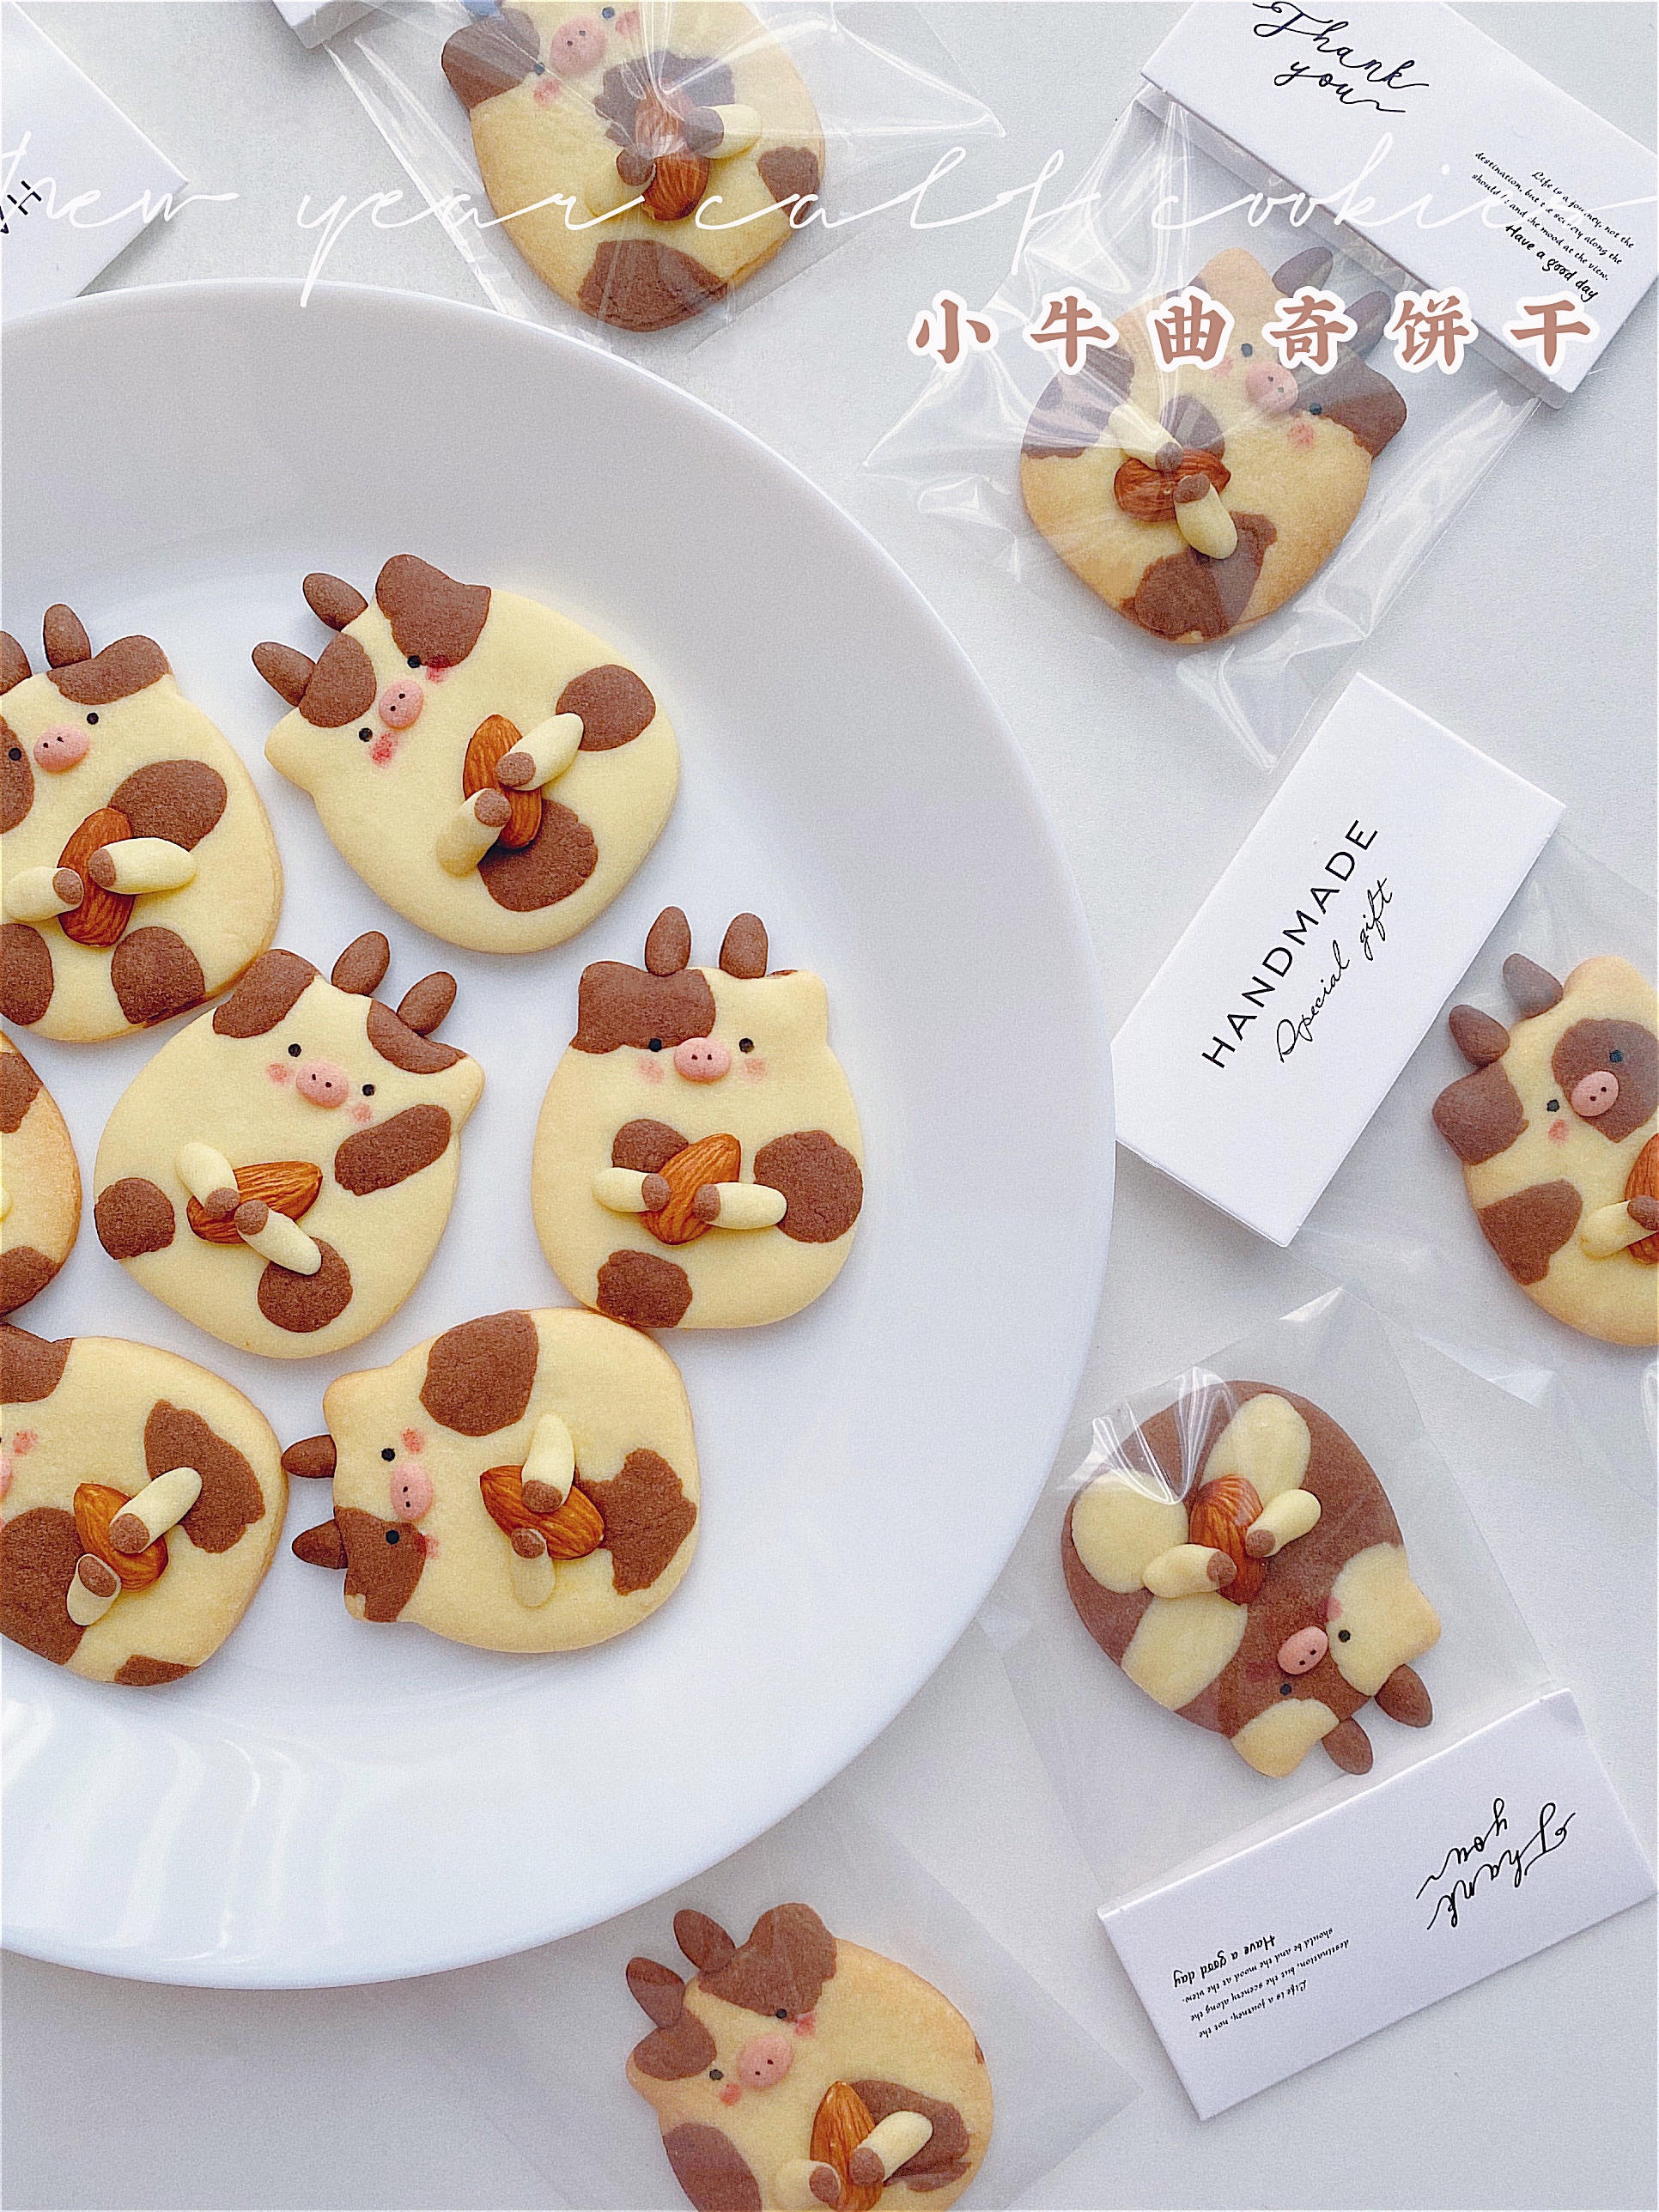 春节特别企划🧧软萌可爱的小奶牛曲奇饼干🐄的做法